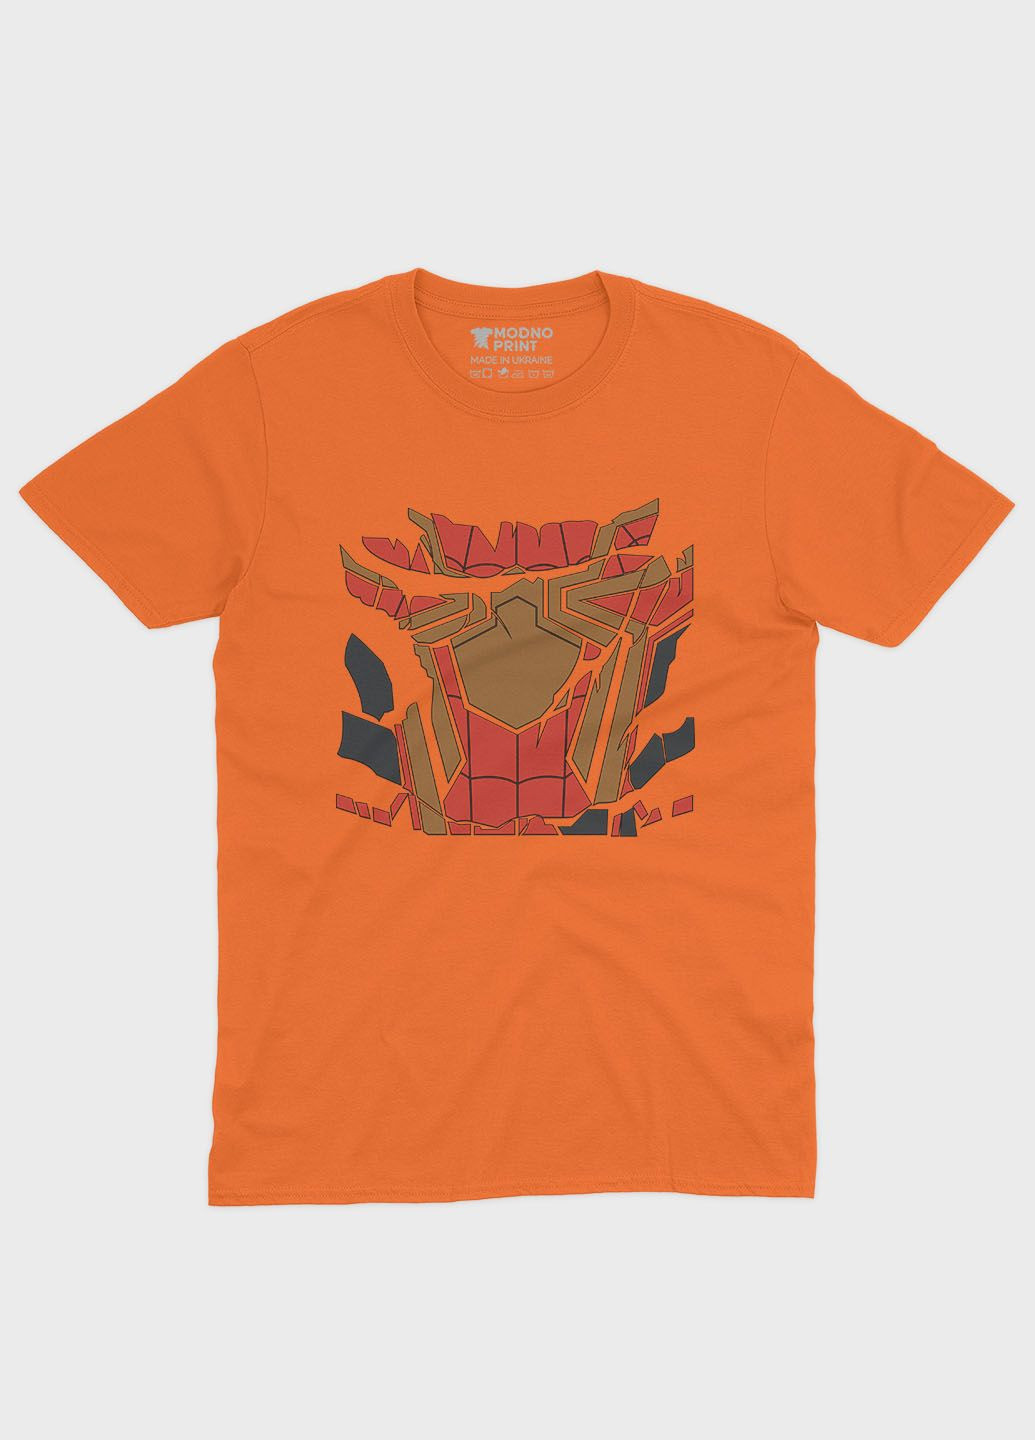 Оранжевая демисезонная футболка для мальчика с принтом супергероя - человек-паук (ts001-1-ora-006-014-087-b) Modno